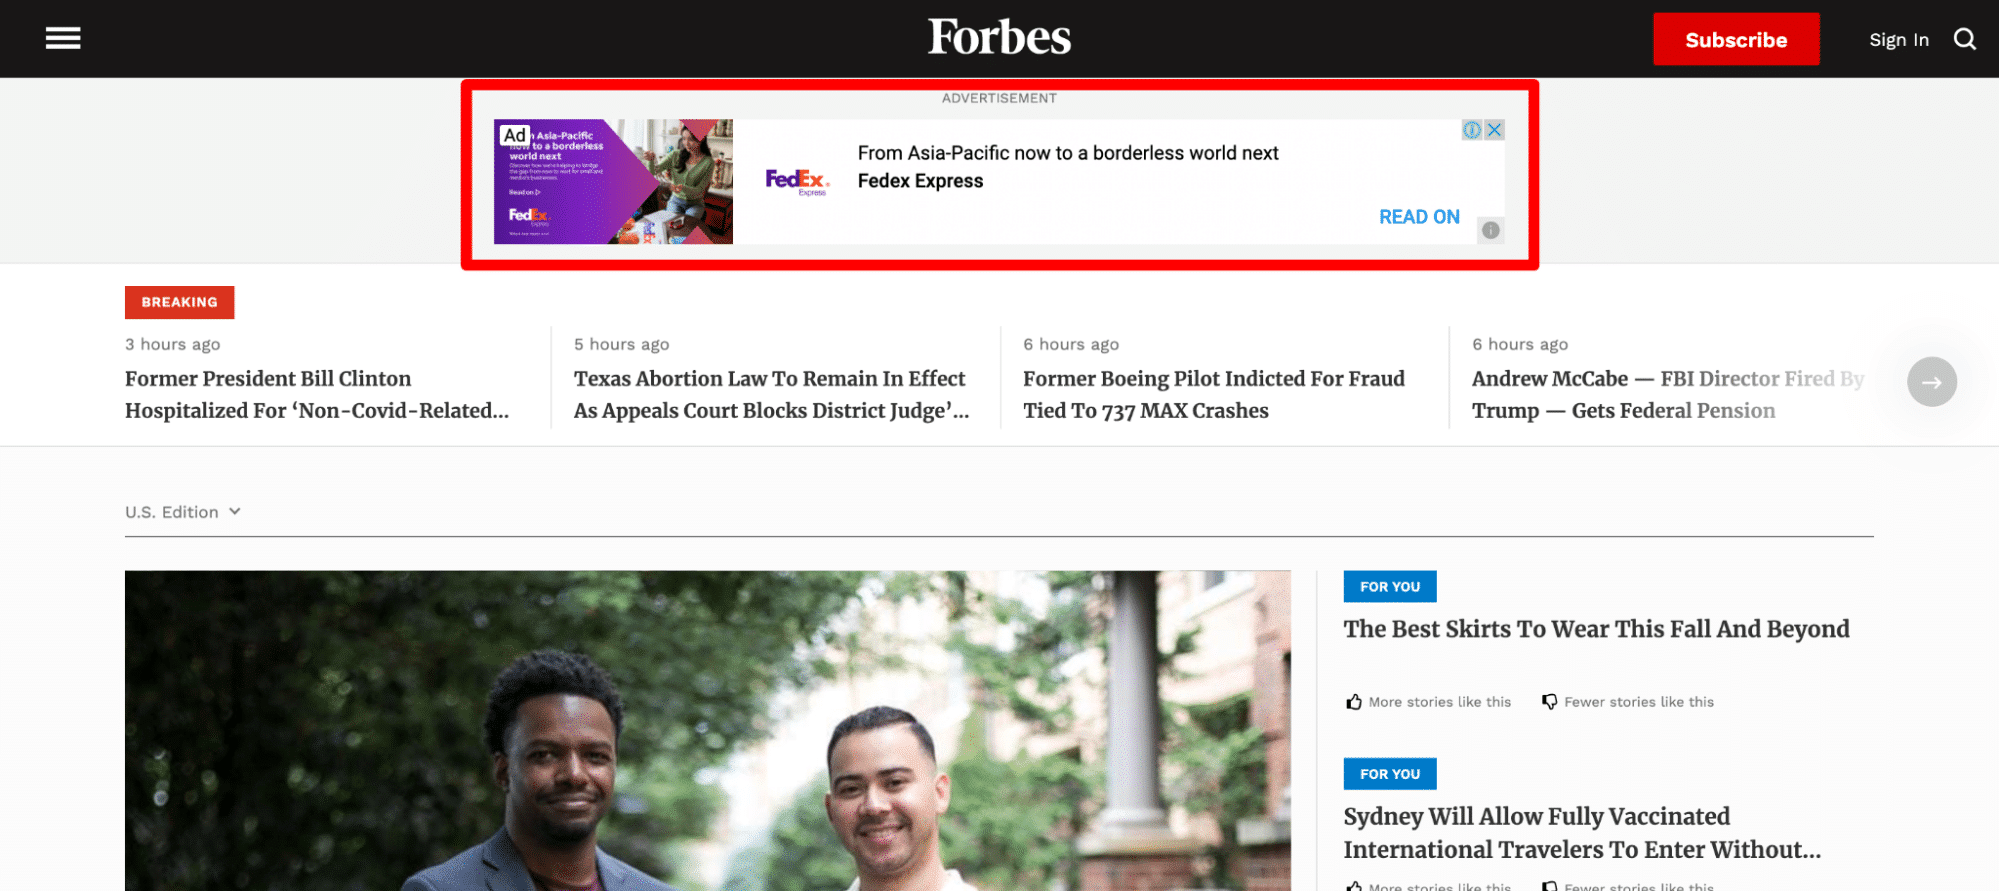 Schermata dalla homepage di Forbes con un bannero pubblicitario cerchiato in rosso